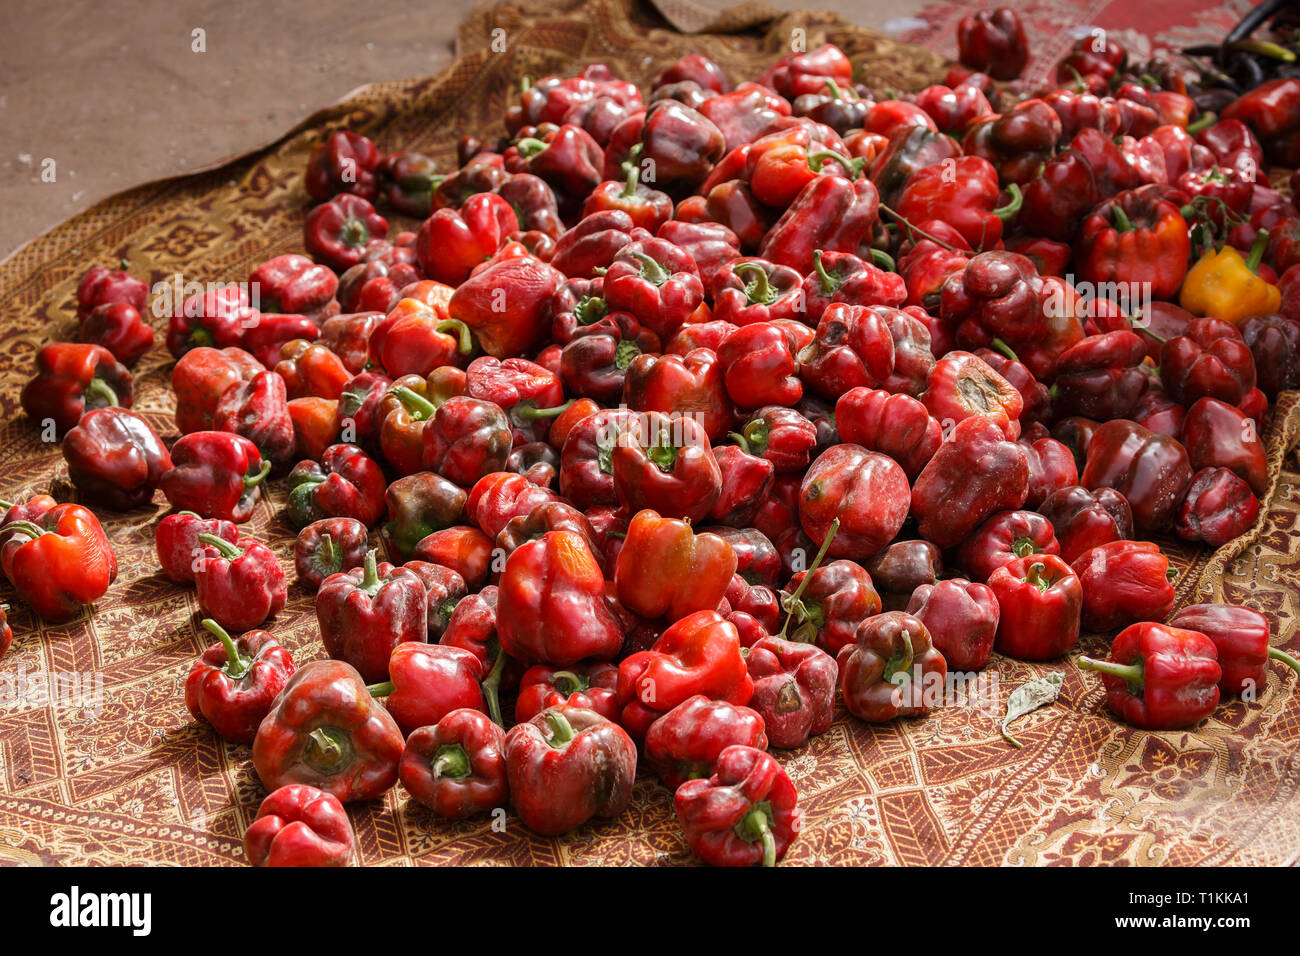 KASHGAR, XINJIANG/CHINA - Oktober 1, 2017: ein Haufen von rotem Pfeffer auf einem Teppich - eine alternative Gemüse zum Verkauf an. Stockfoto